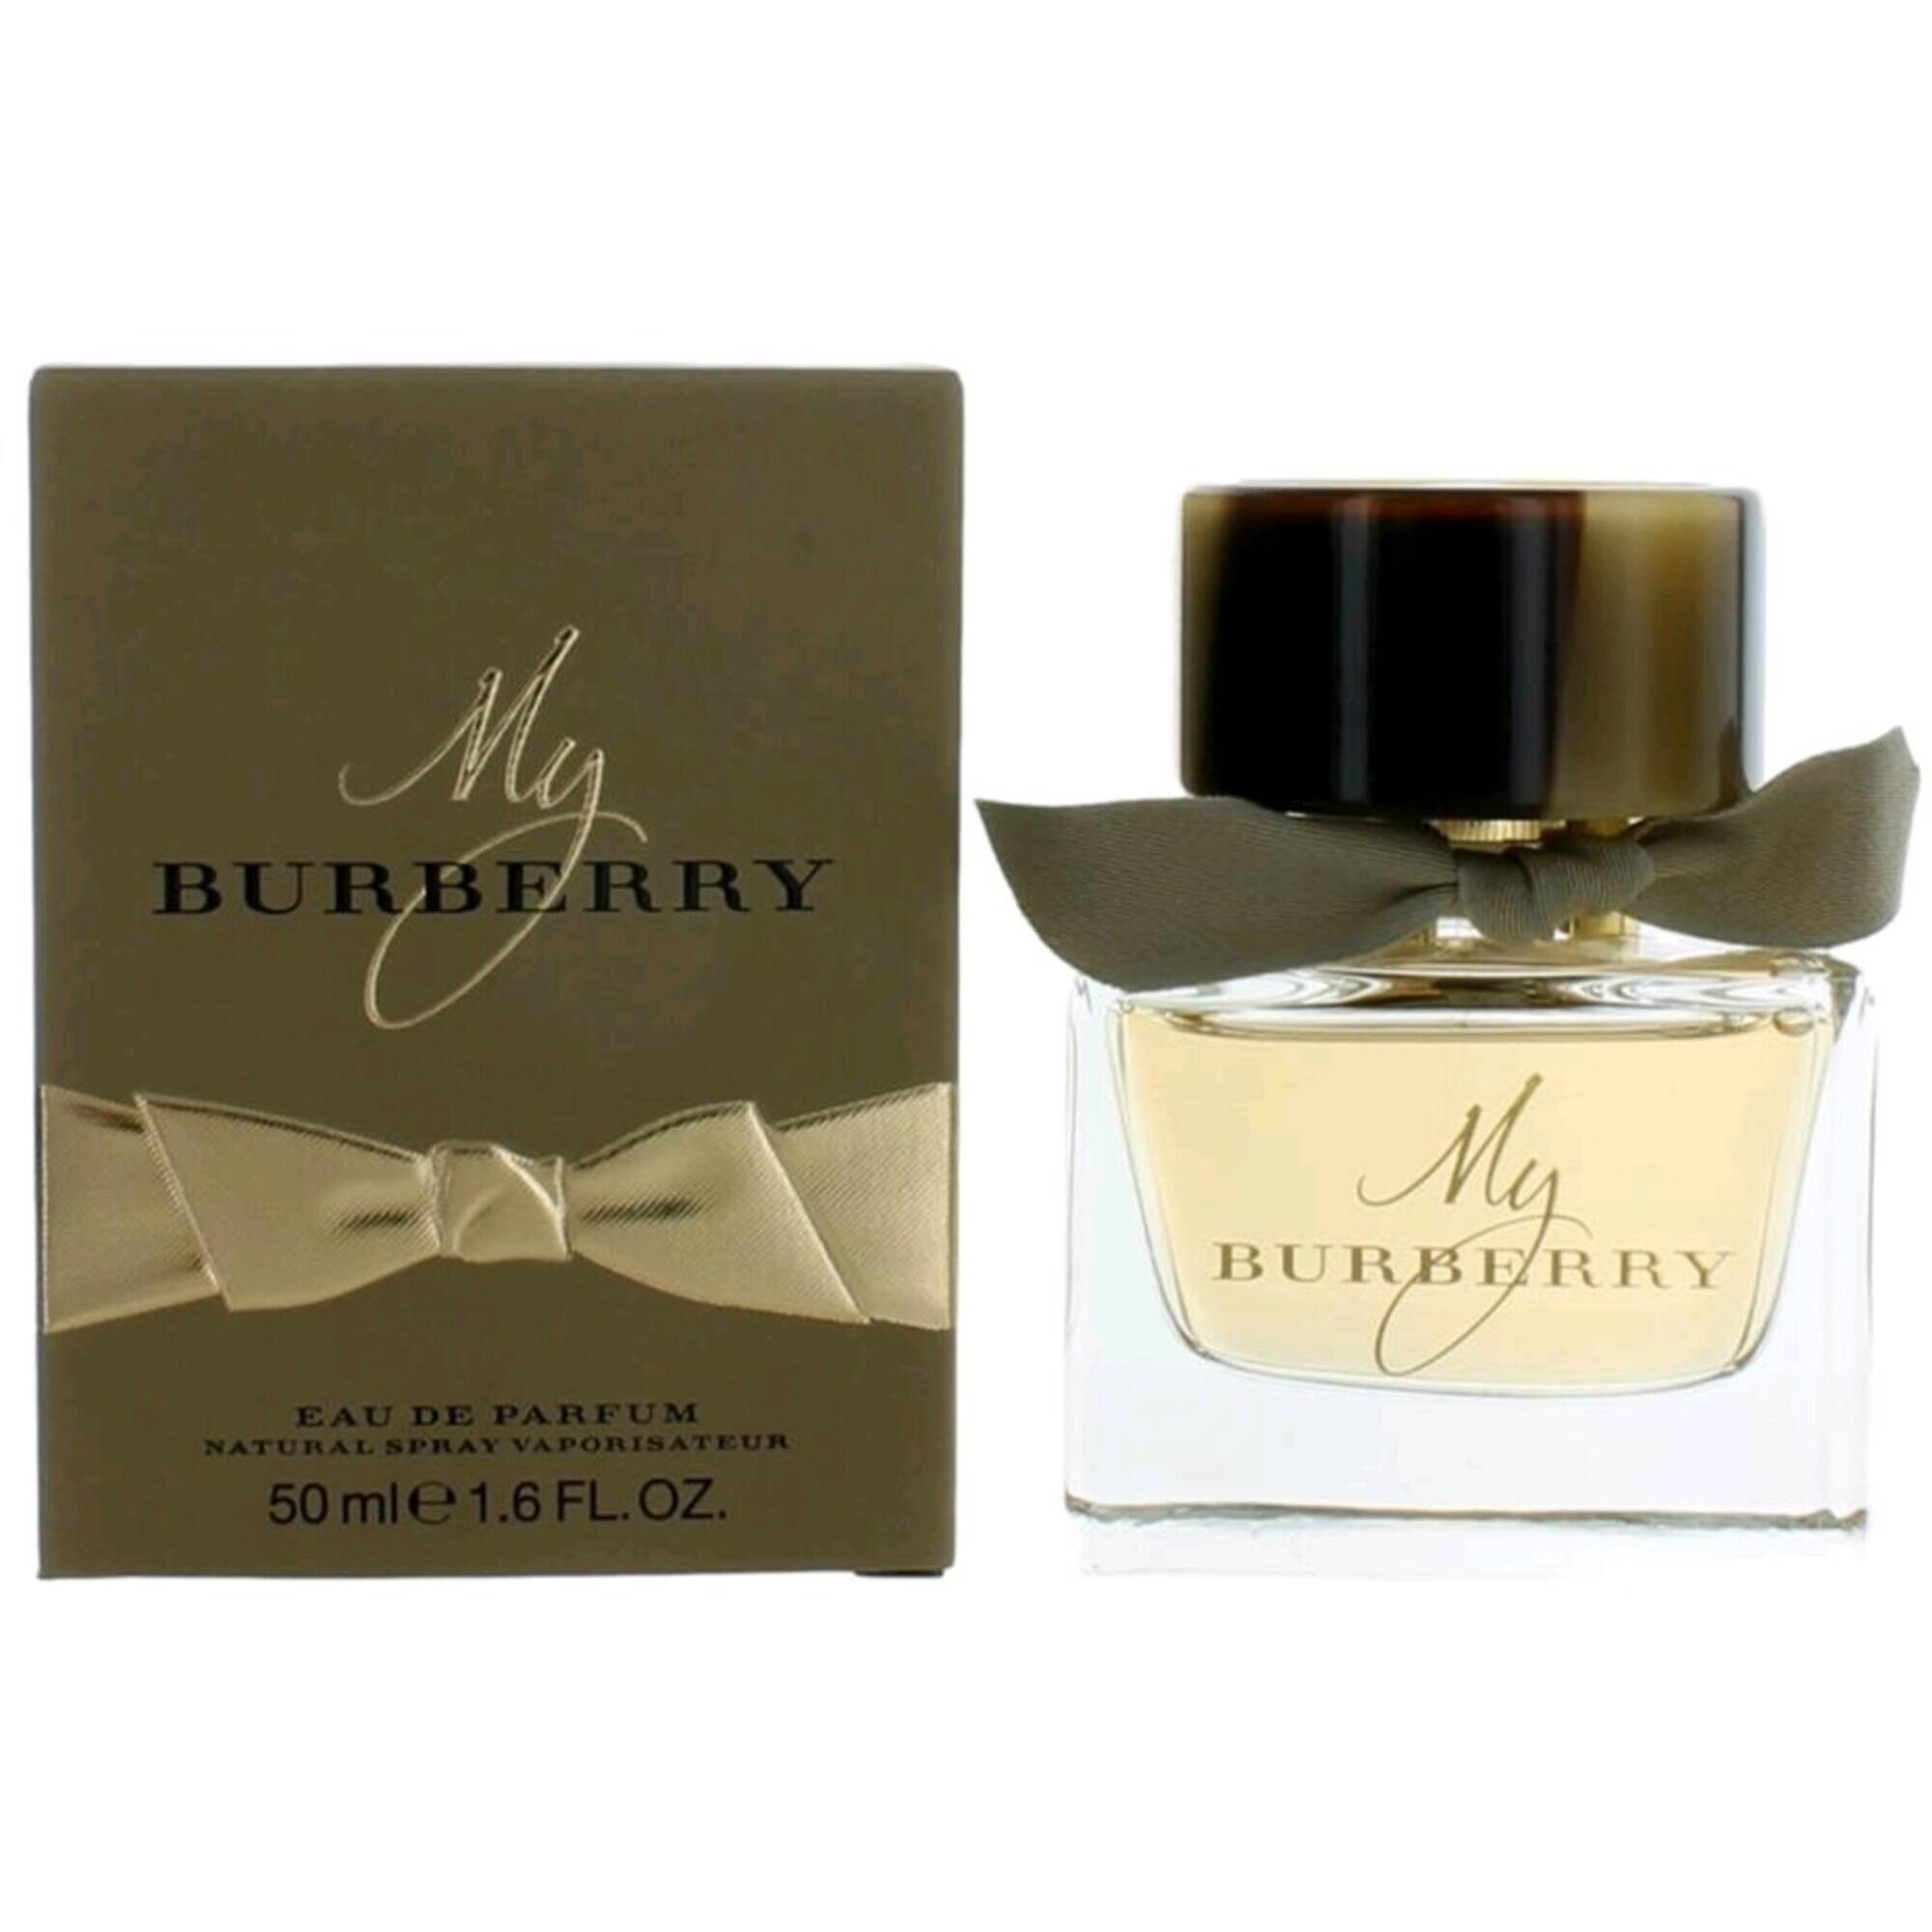 Burberry Women's Eau De Parfum Spray - My with Geranium Leaf Natural, 1.6 oz